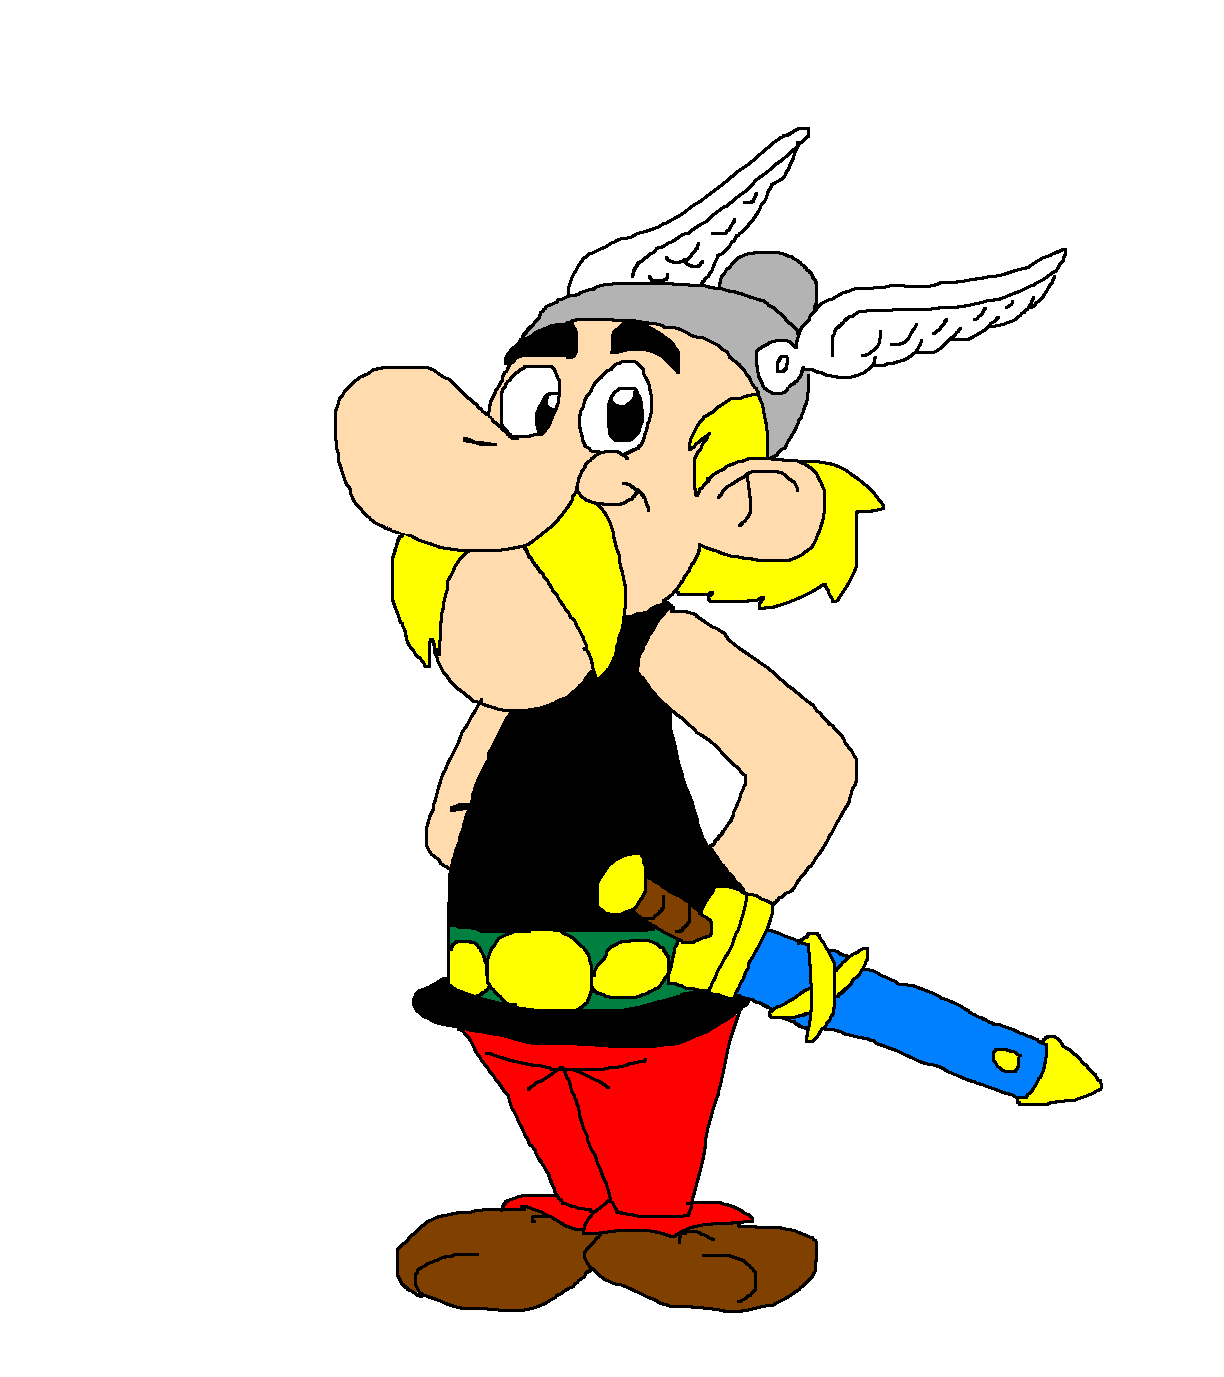 asterix_the_gaul_by_scurvypiratehog-d8uu